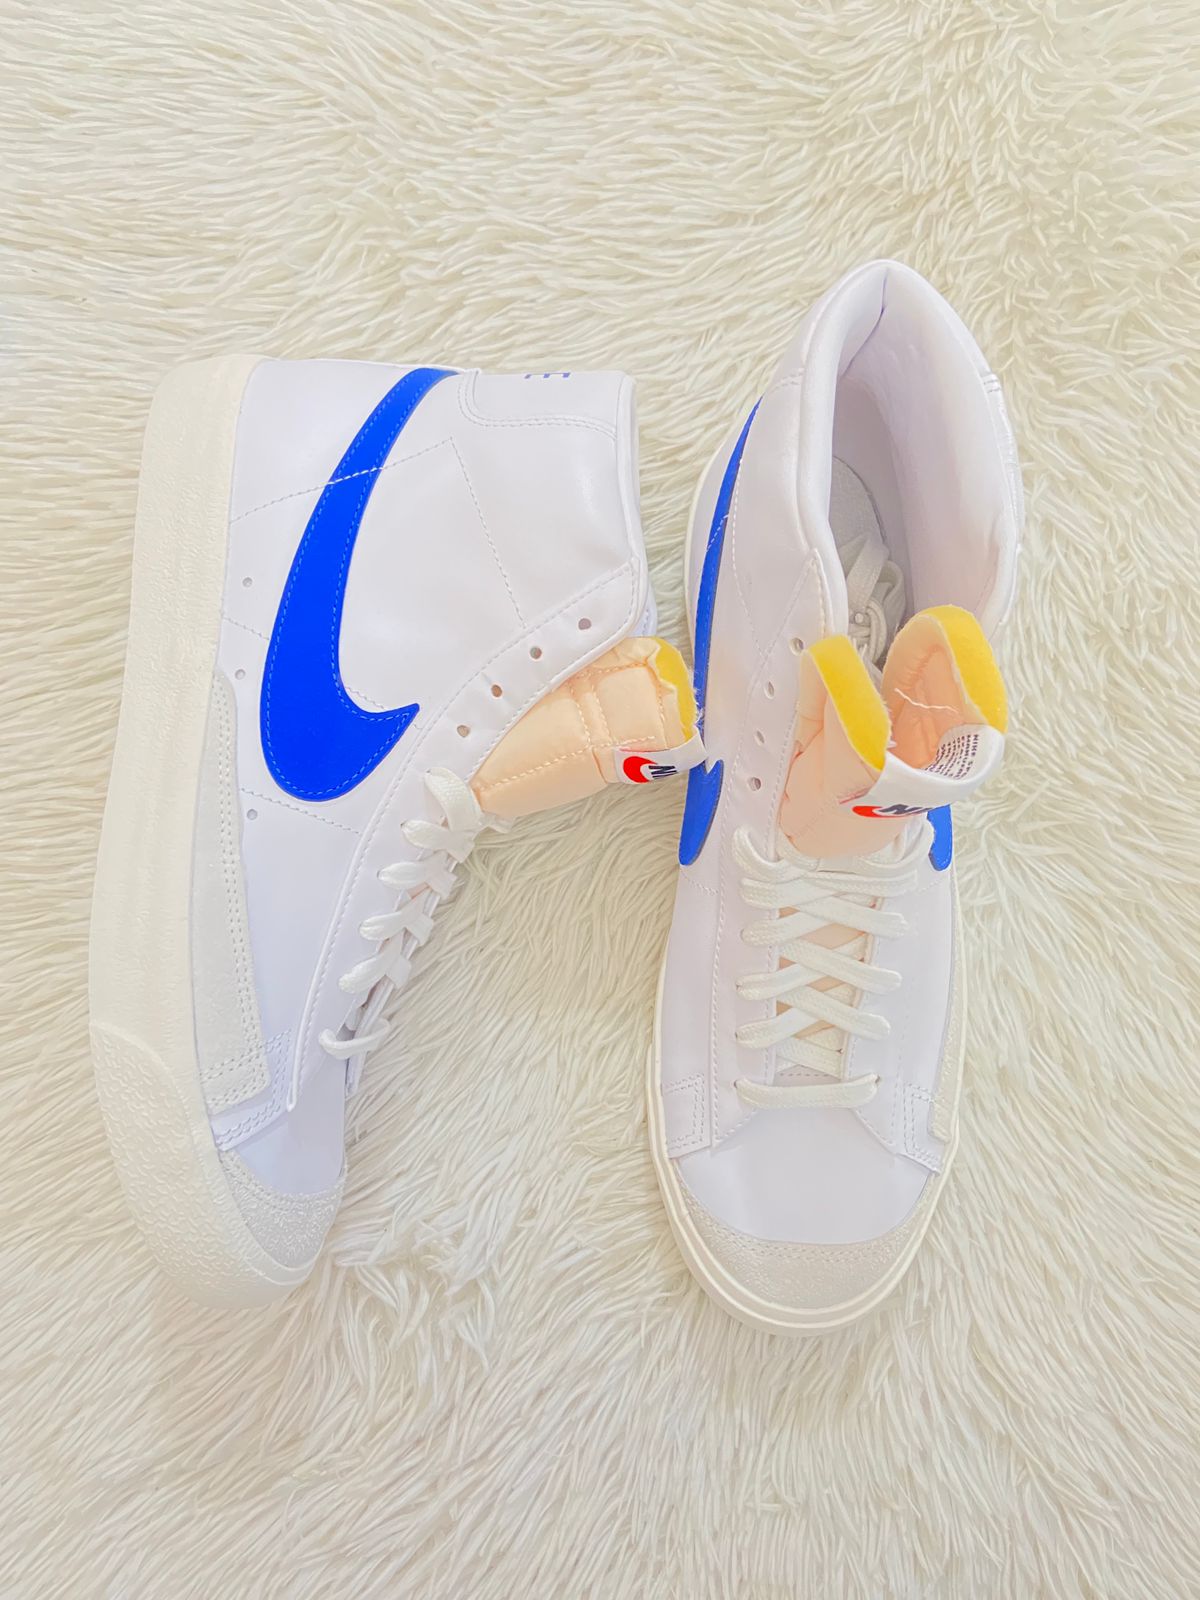 Tenis Nike original alto en color blanco con logotipo Nike en ambos lados en azul